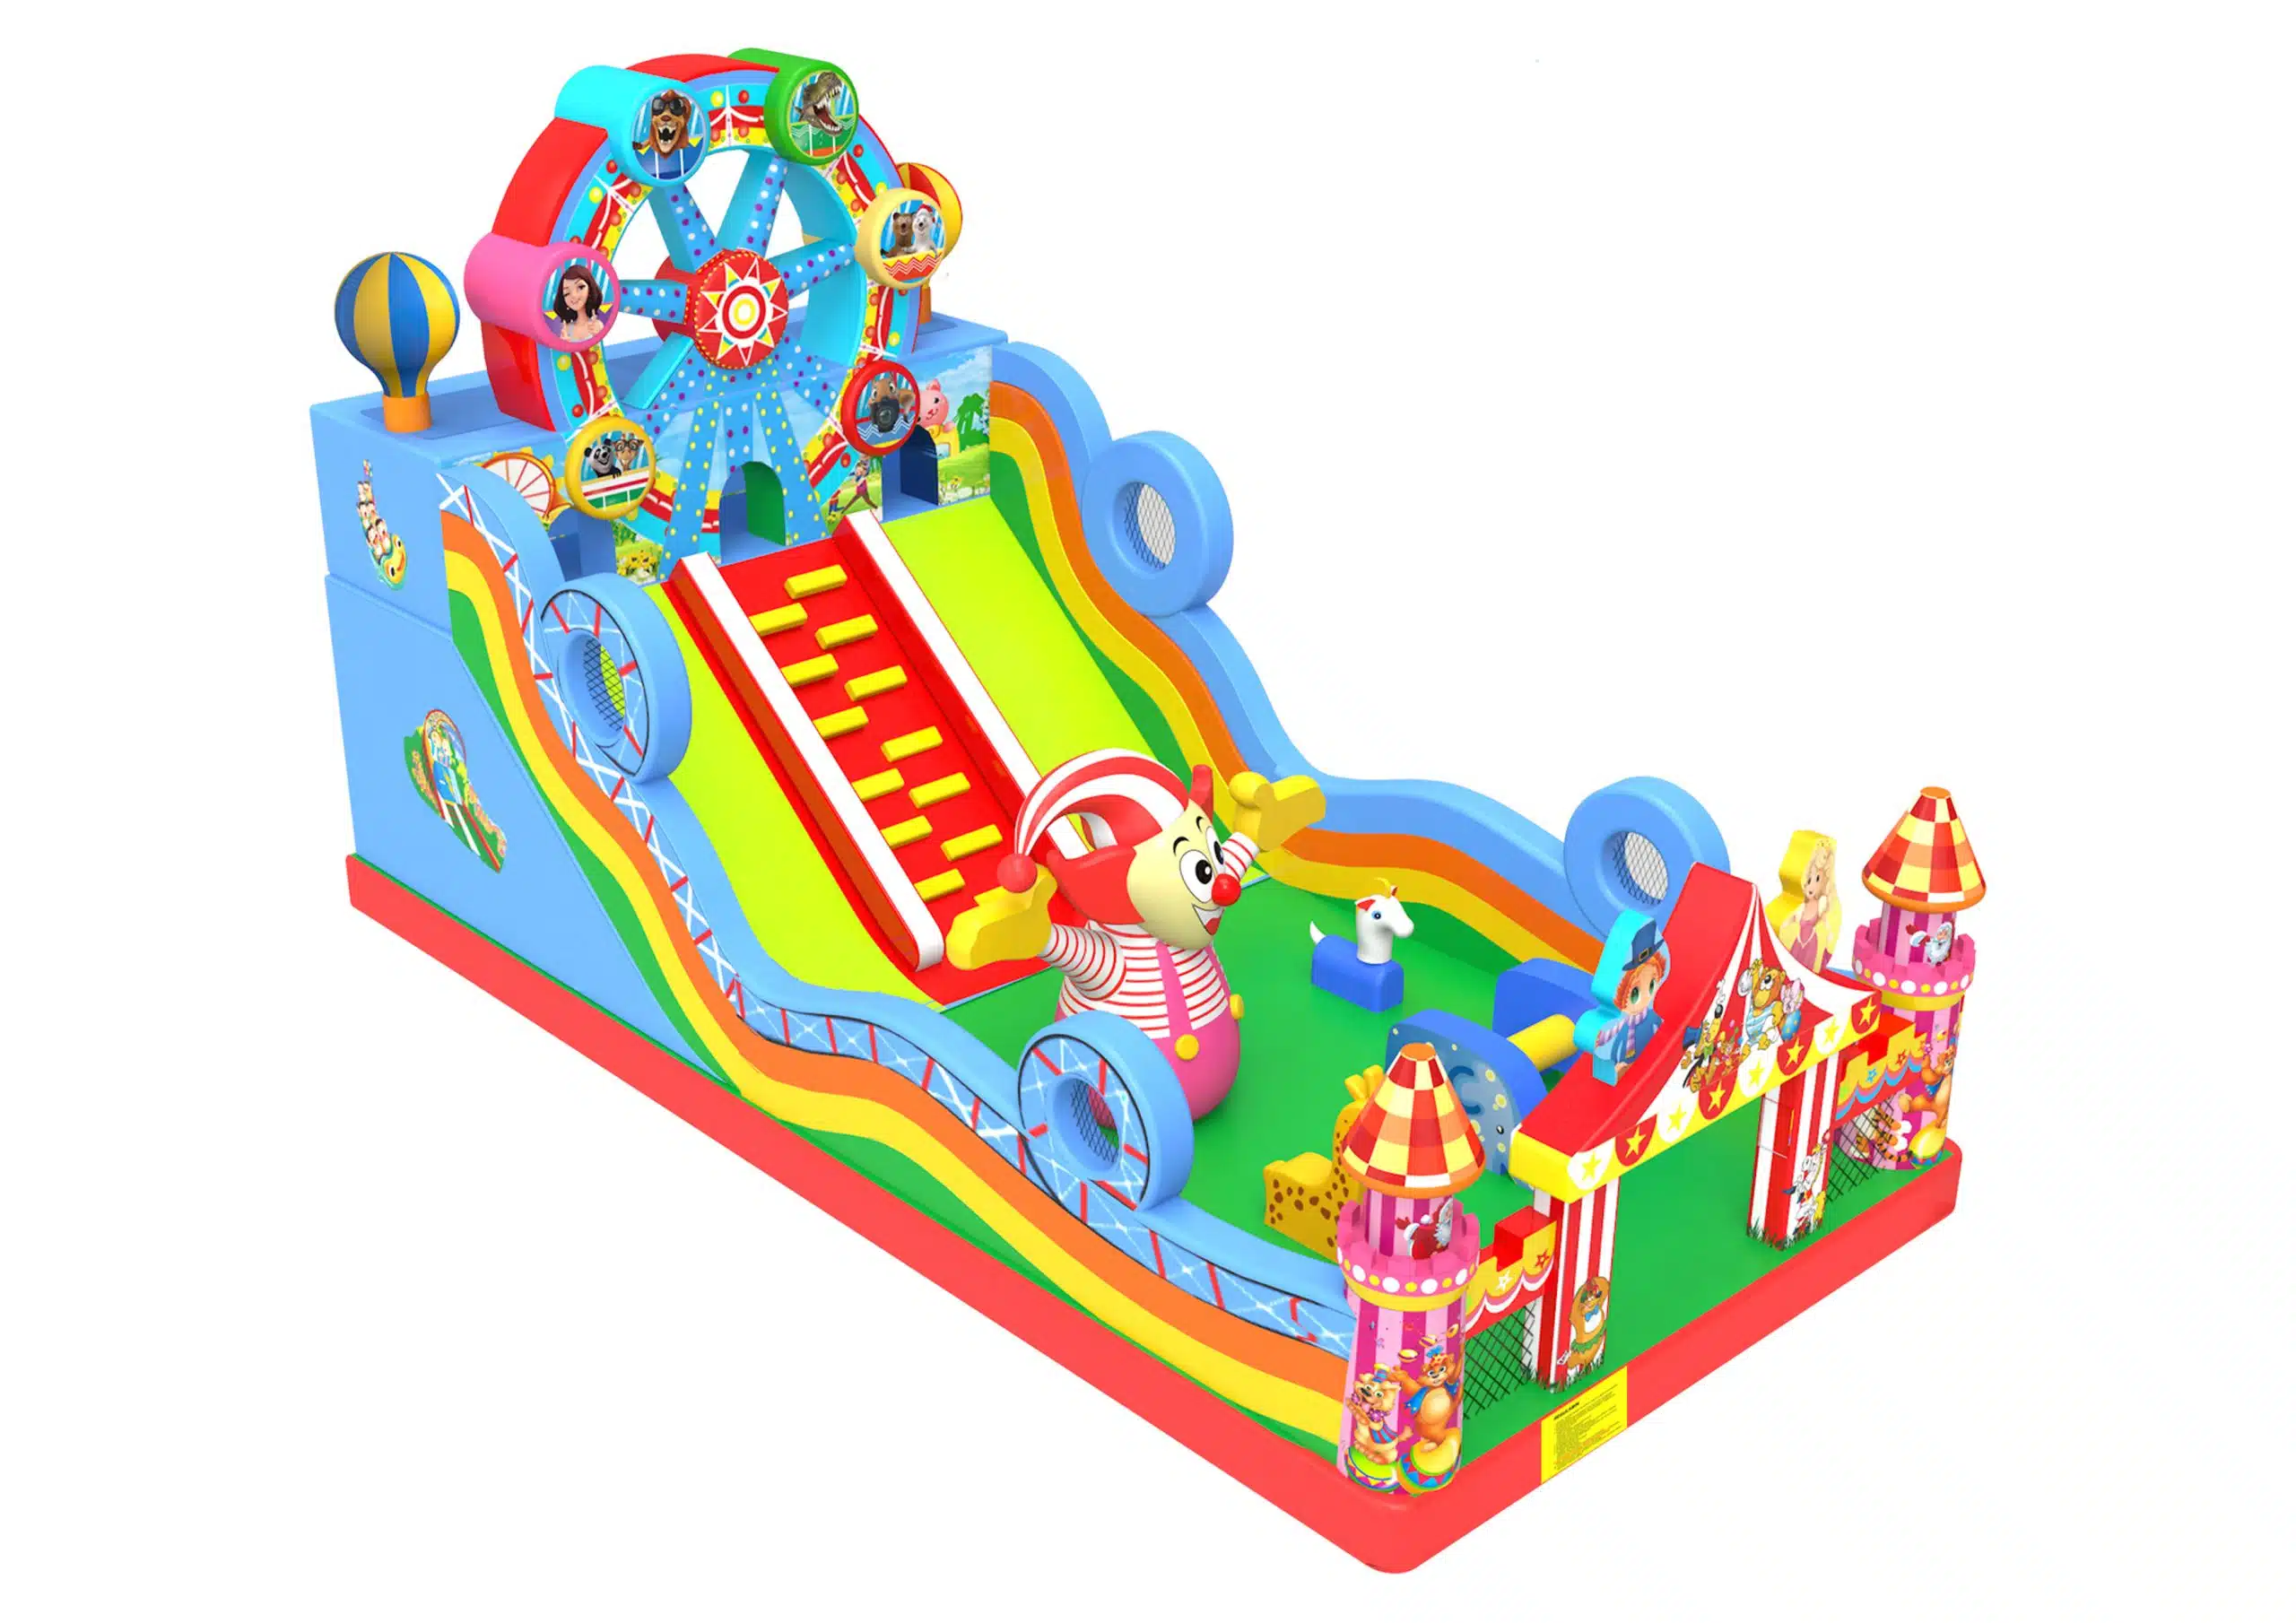 Kolorowa ilustracja parku rozrywki dla dzieci.